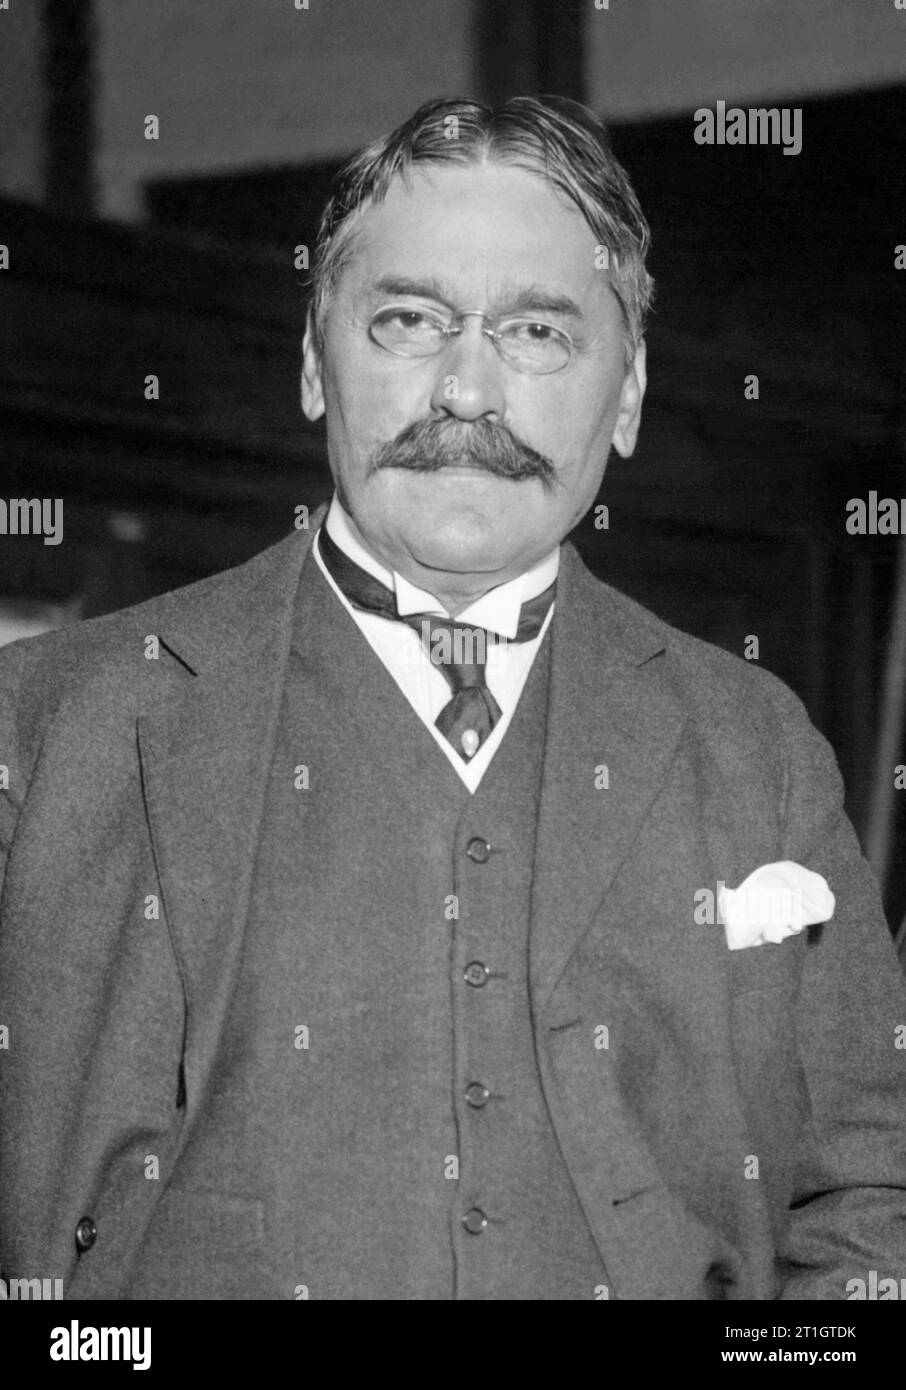 Der serbische Wissenschaftler Mihaljo Idvorski Pupin (1858–1935) war Professor an der Columbia University, Gründungsmitglied der NACA (dem Vorgänger der NASA), Philanthrope und wissenschaftlicher Erfinder mit zahlreichen Patenten. Stockfoto